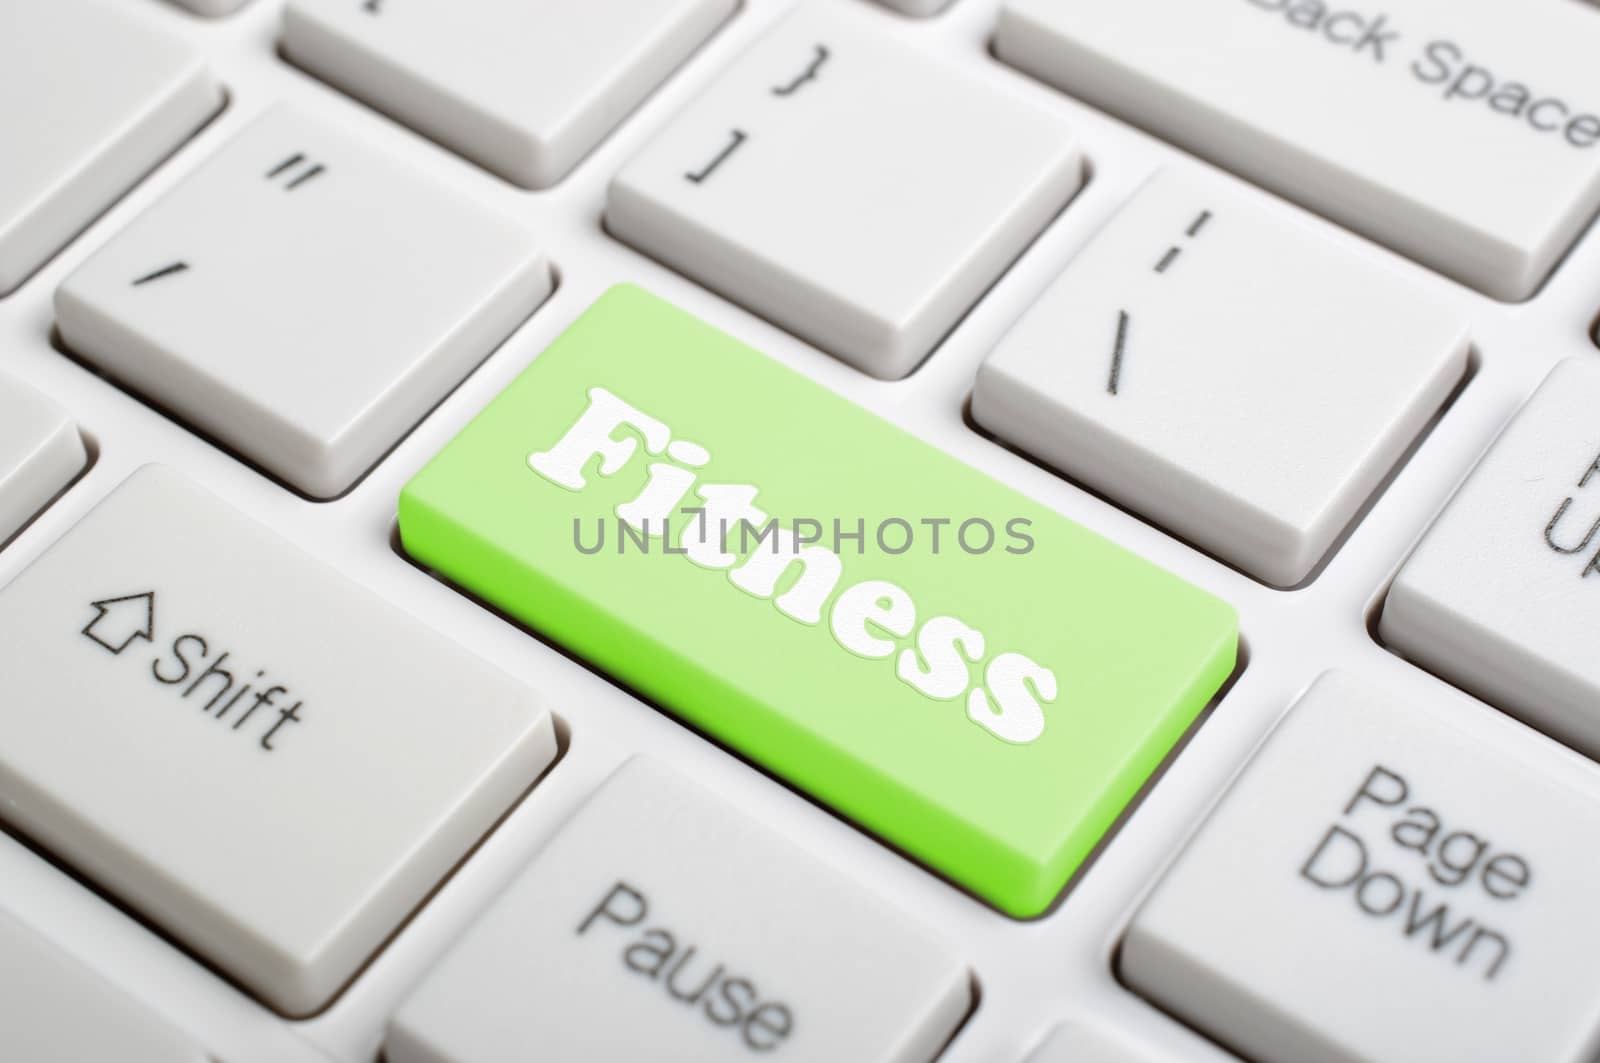 Green fitness key on keyboard